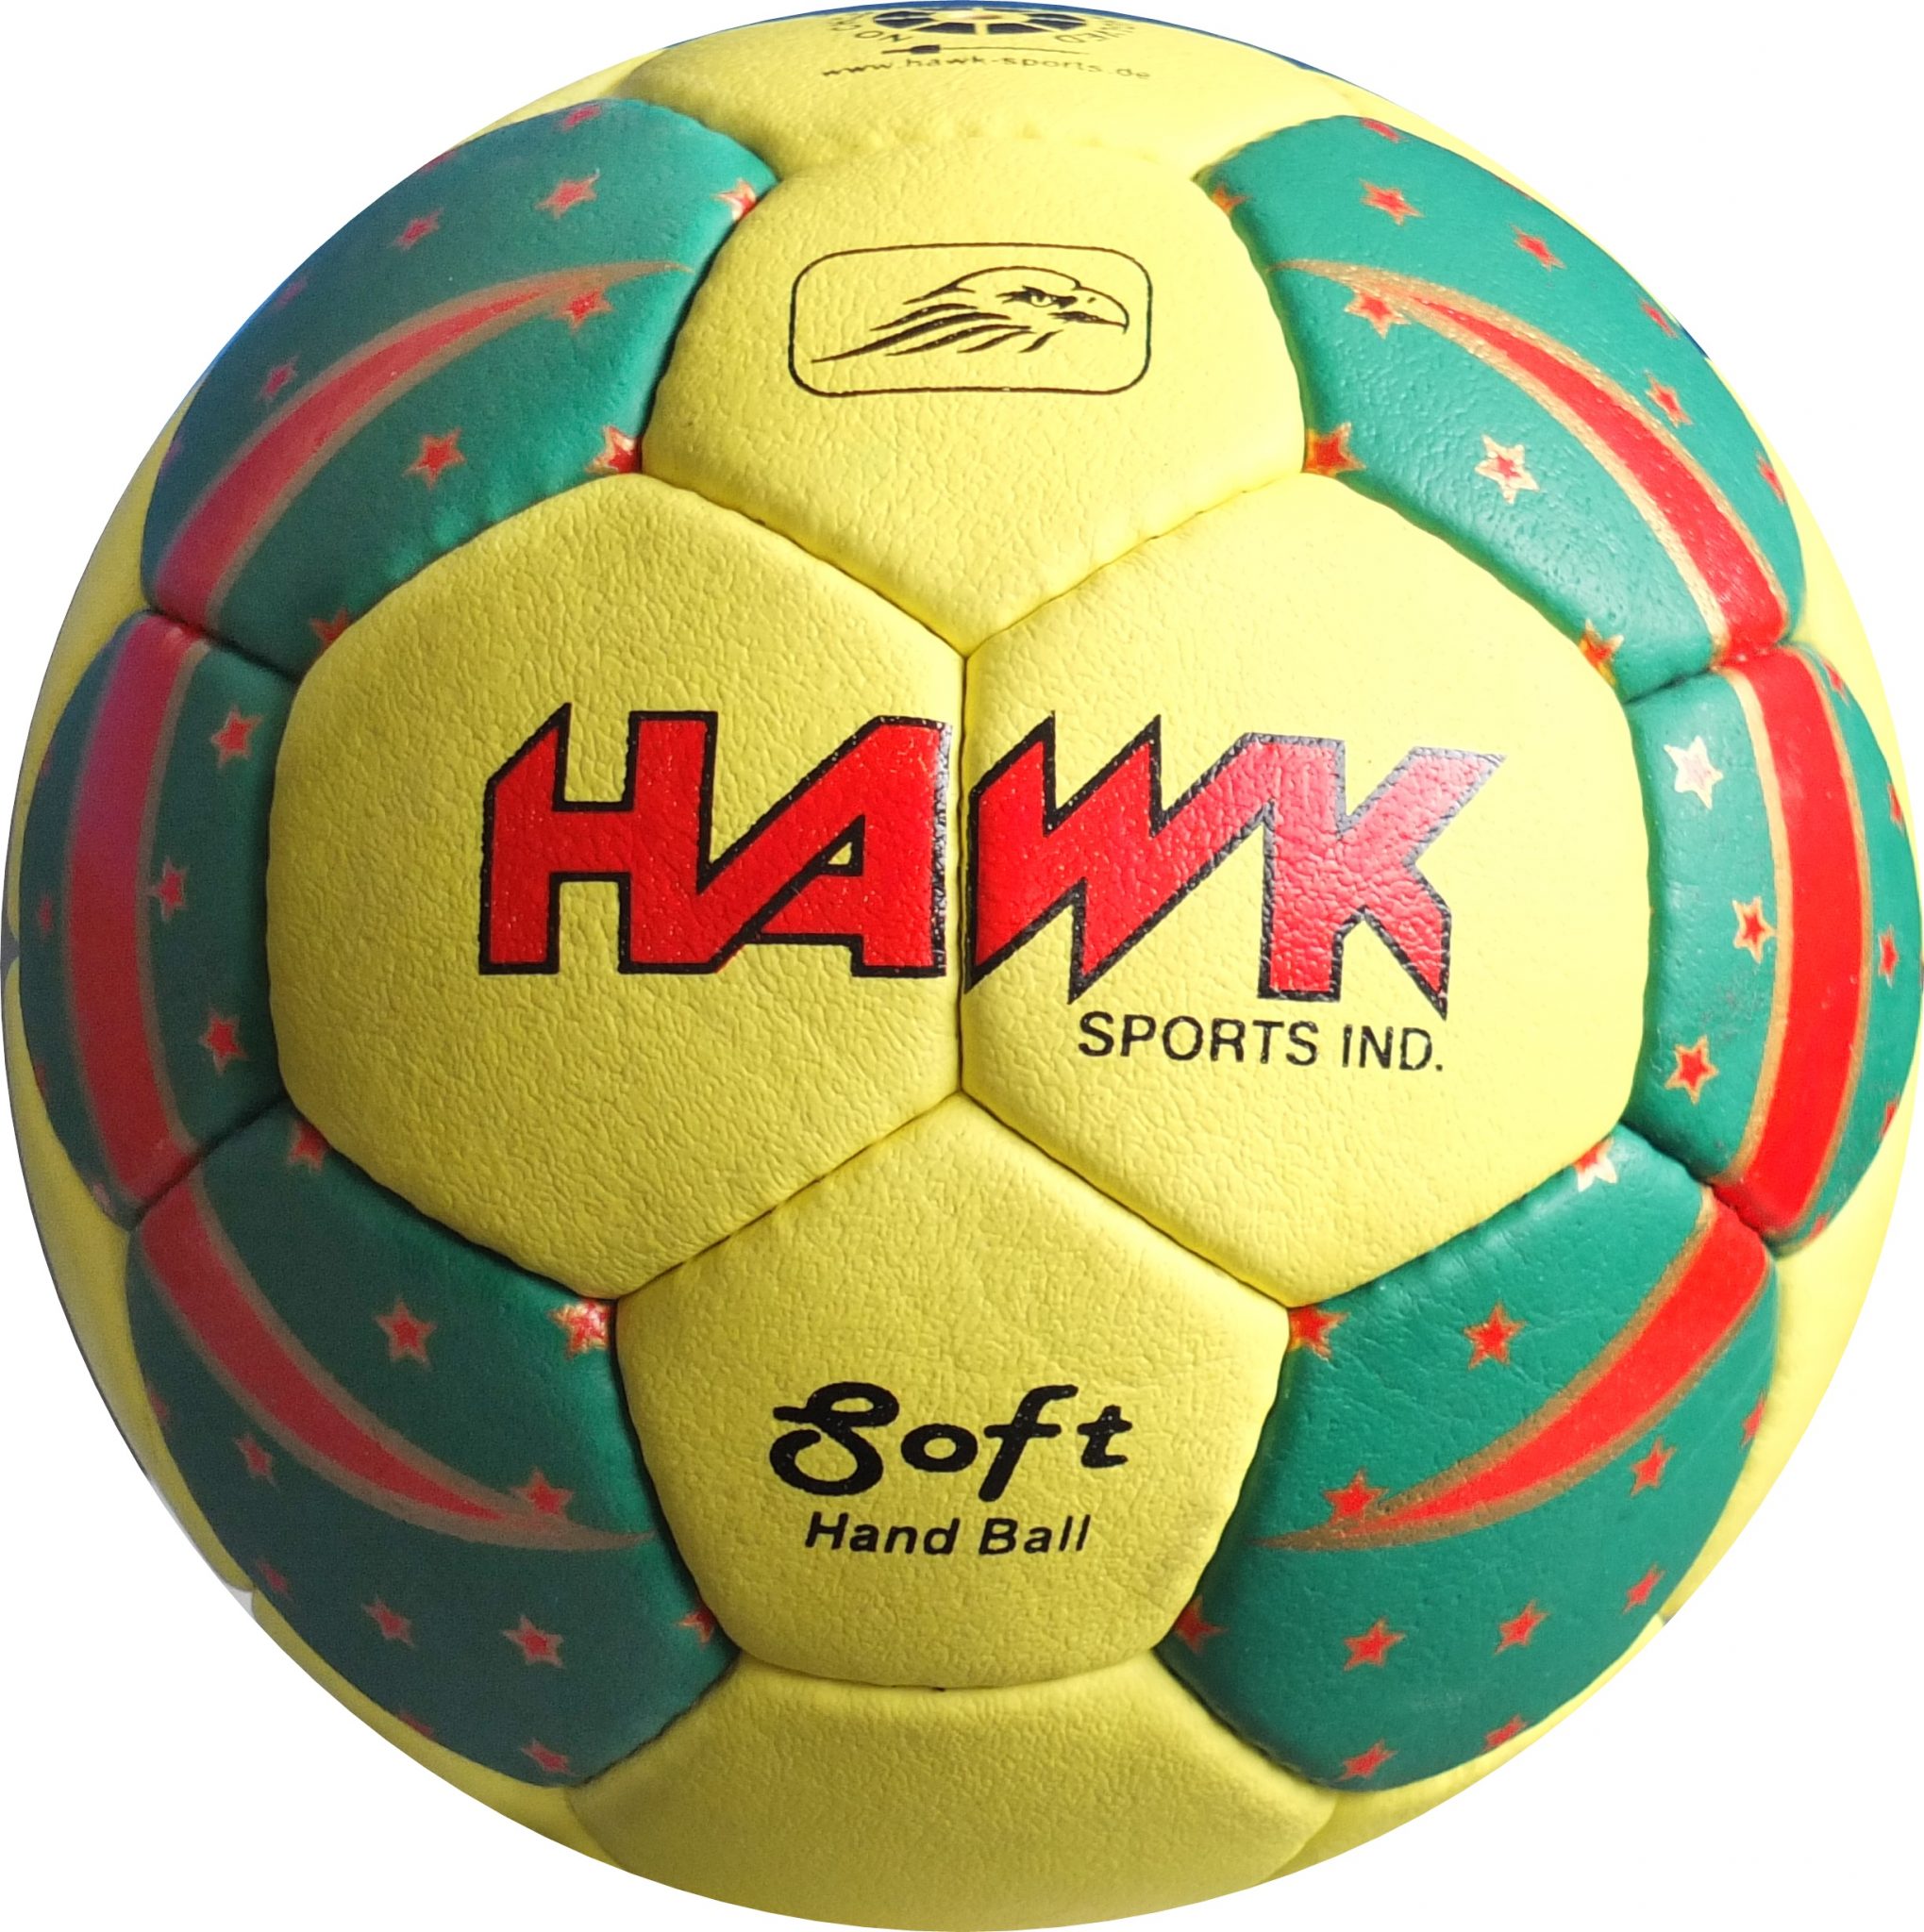 Hawk® Professional Soft Handball | HawkSports